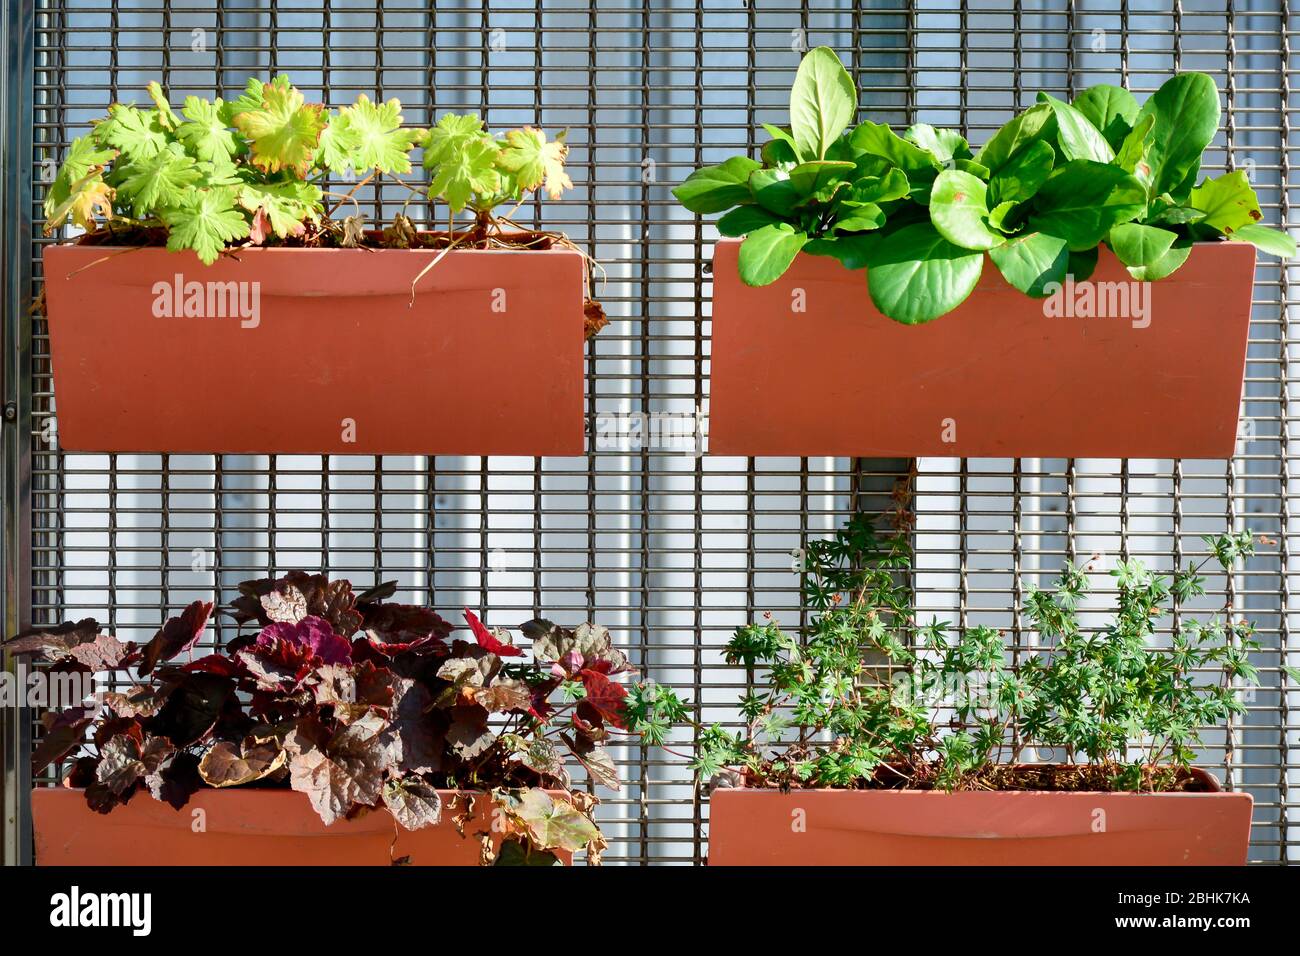 Pflanzgefäße an einem Zaun befestigt. Orangefarbene Blumentöpfe mit verschiedenen Pflanzen. Pflanzen in Containern gepflanzt, vertikale Garten Idee. Stockfoto